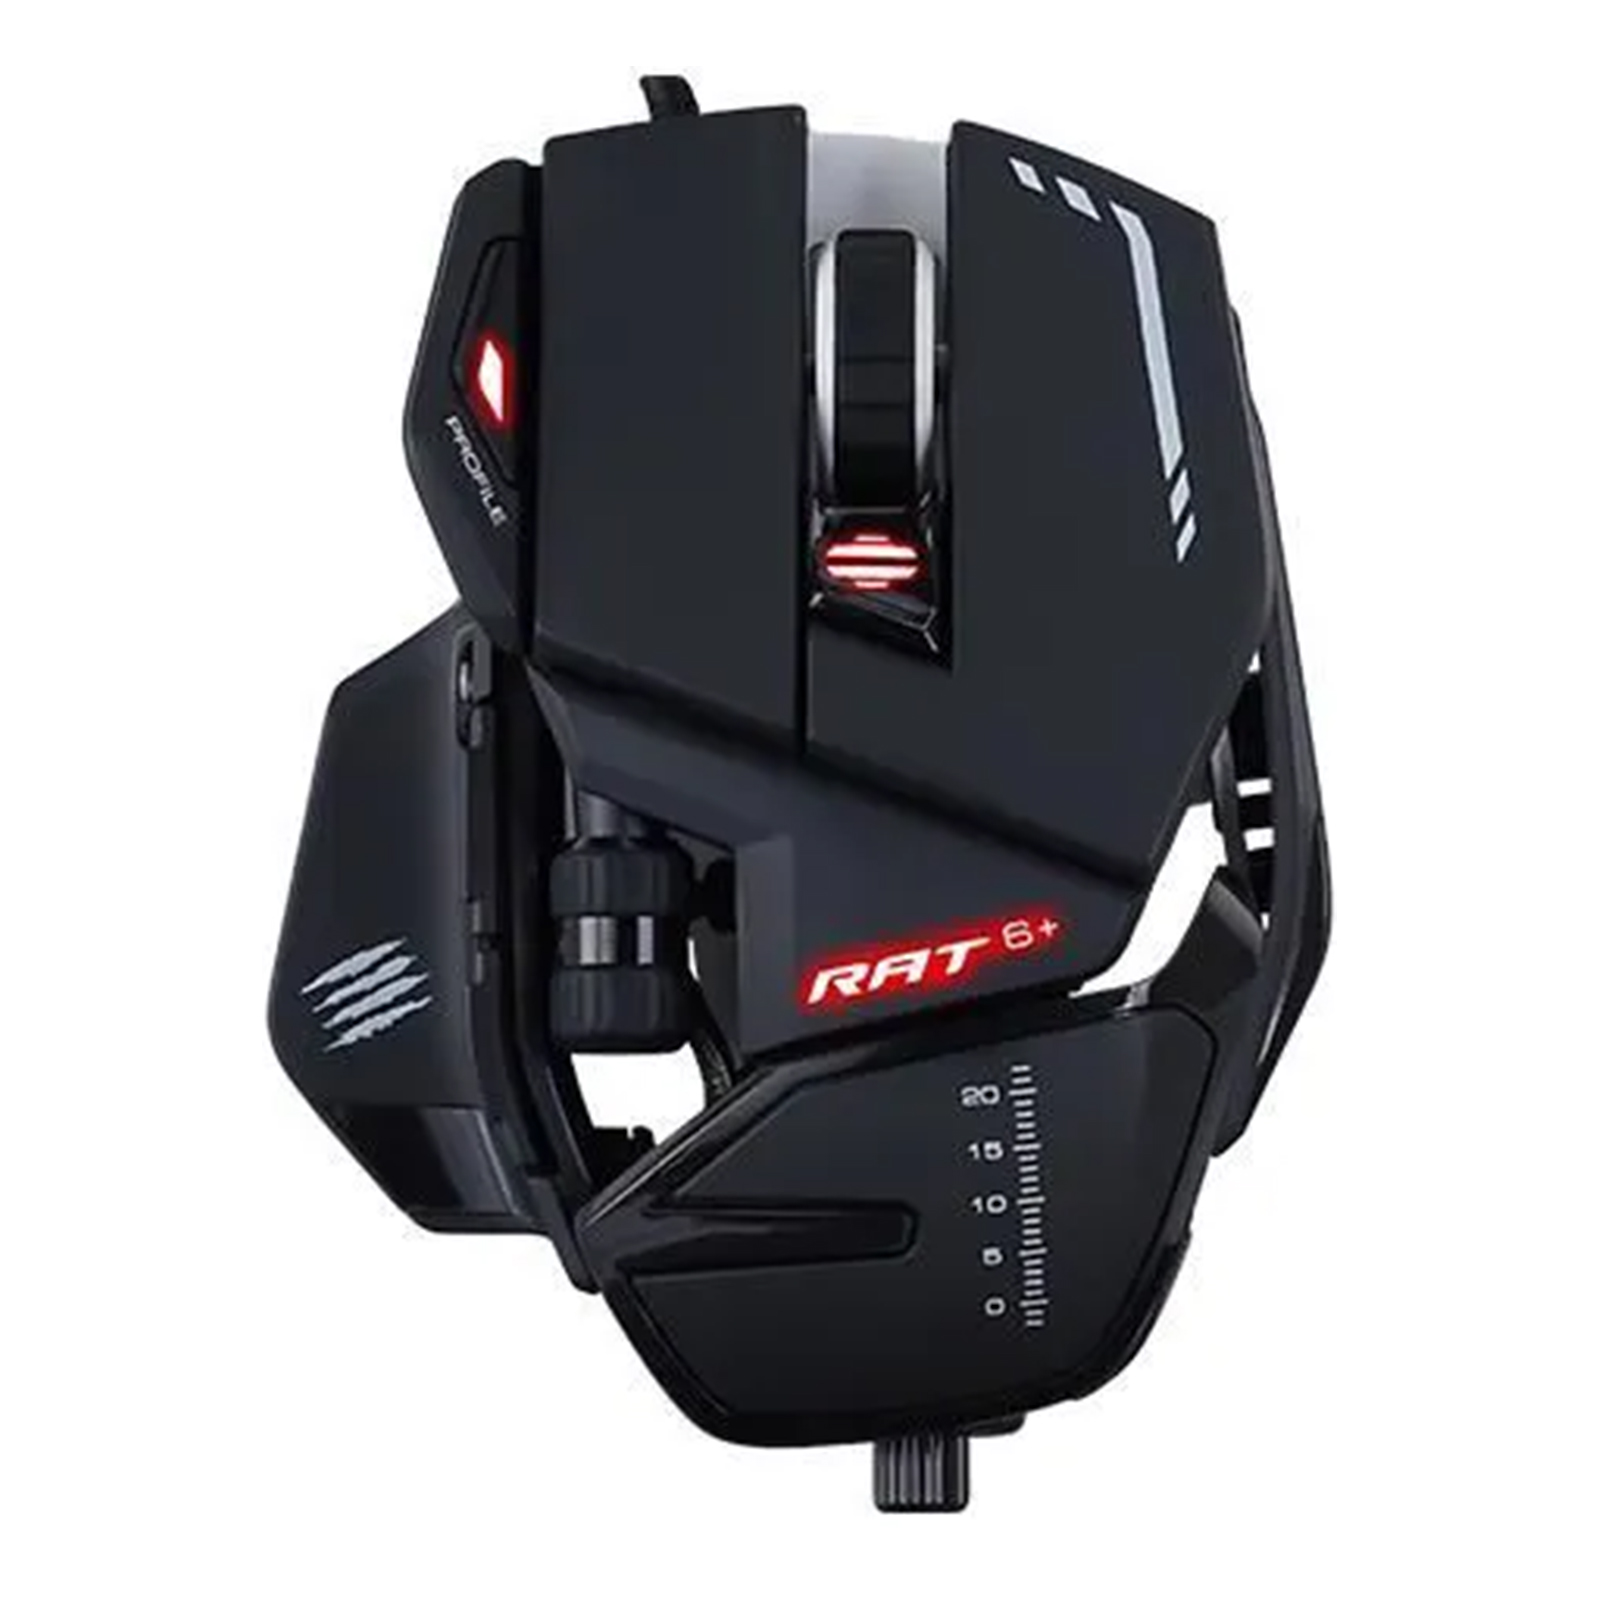 Mad Catz RAT 6+ Noir - Souris gamer filaire personnalisable - 11 boutons -  LED RGB - 12000 DPI - Pixart PMW3360 - Cyber Planet